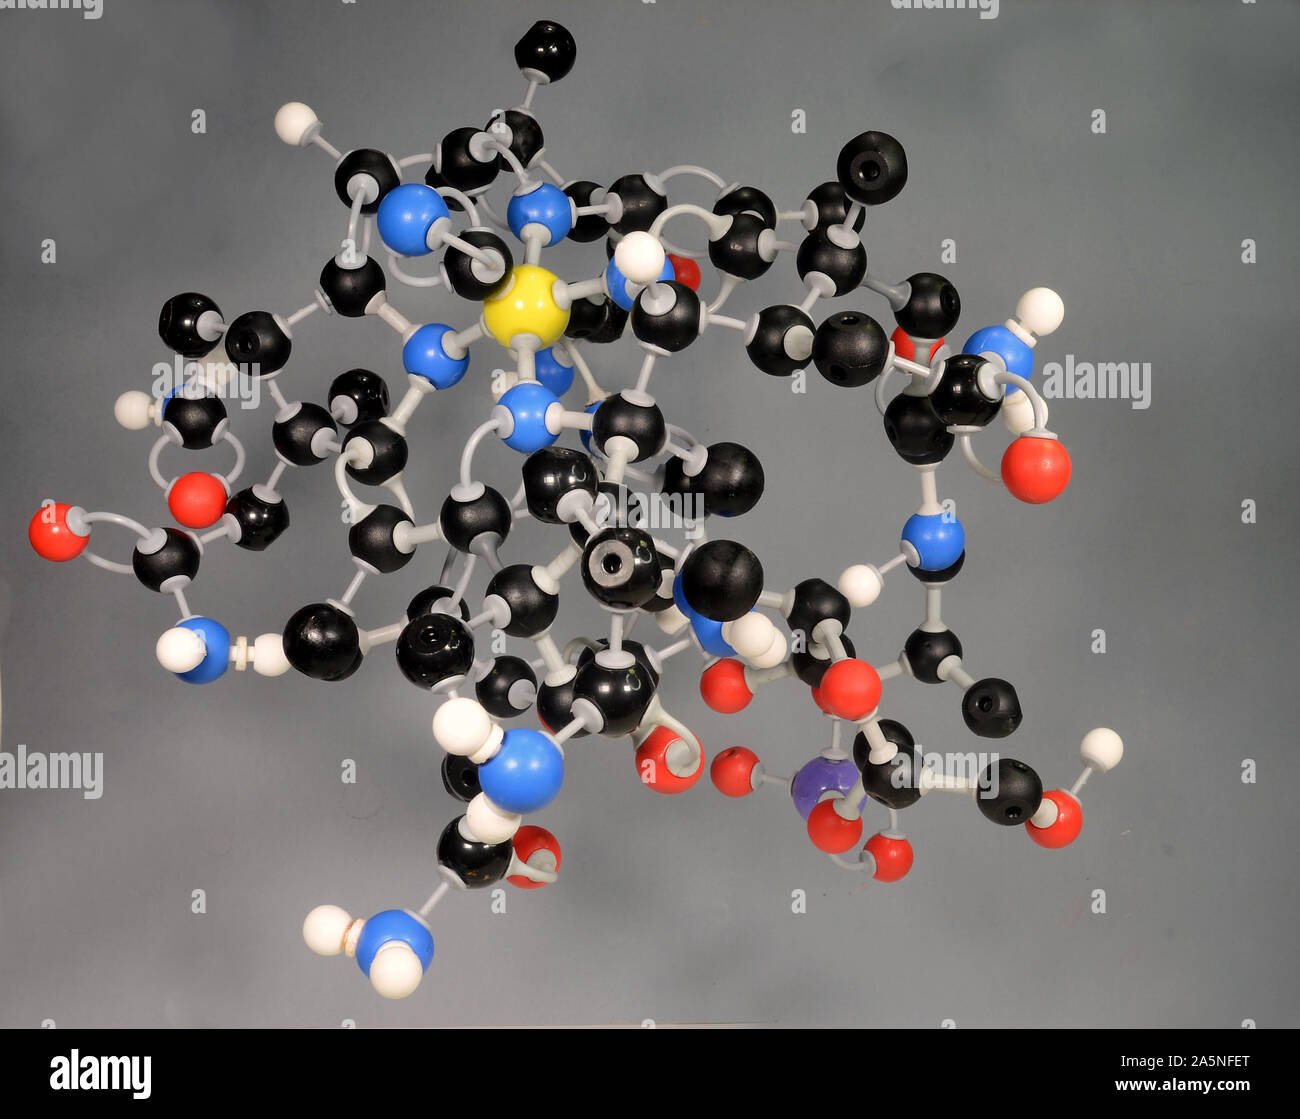 Modèle de molécule de vitamine B12. L'hydrogène est blanc, noir de carbone est, le rouge est l'oxygène, le phosphore est violet et jaune est le Cobalt. Banque D'Images